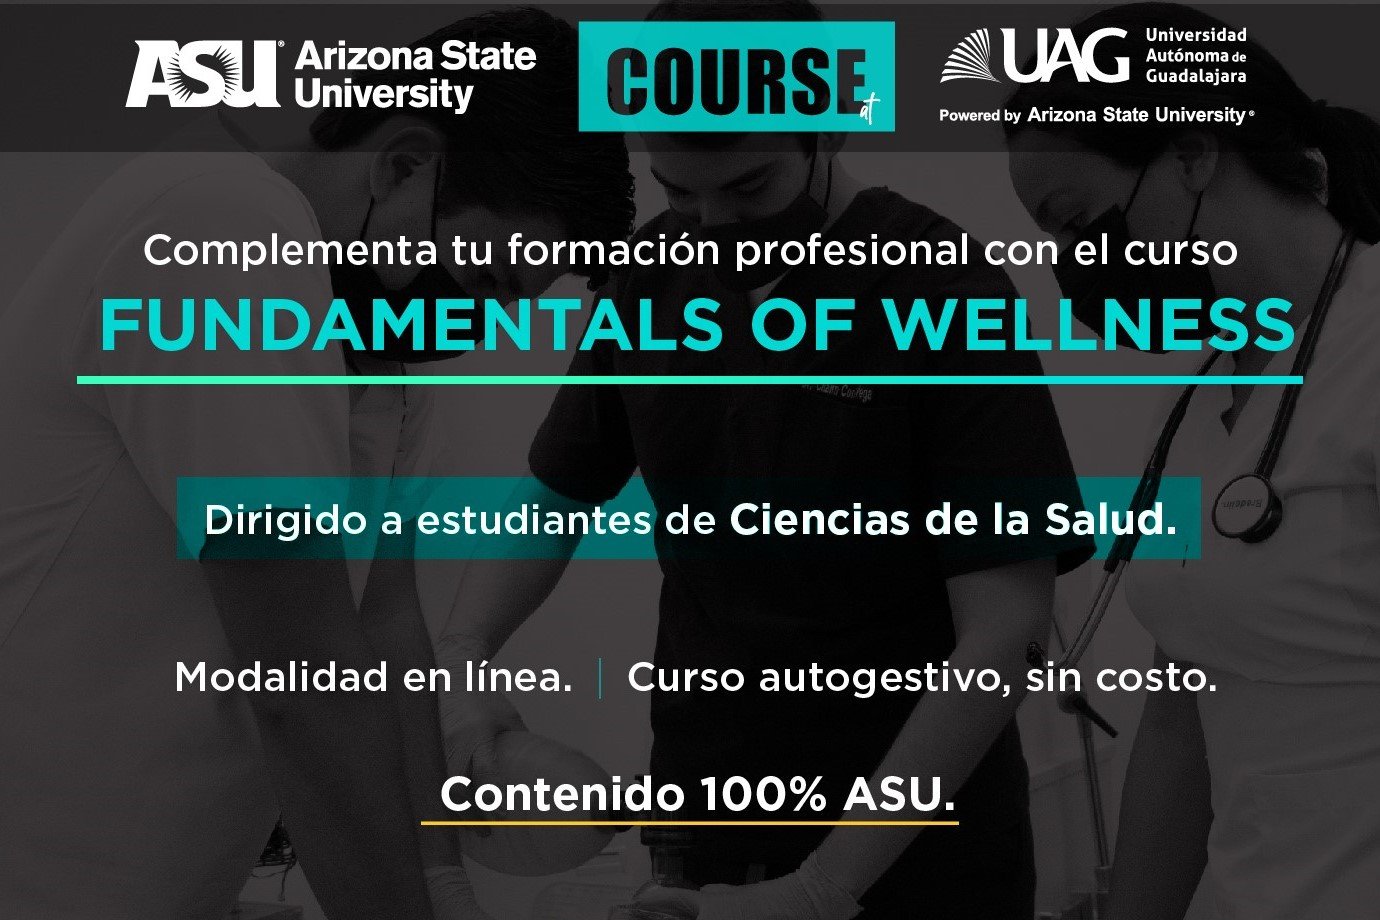 arizona-state-university-imparte-curso-a-estudaintes-de-ciencias-de-la-salud-de-la-uag